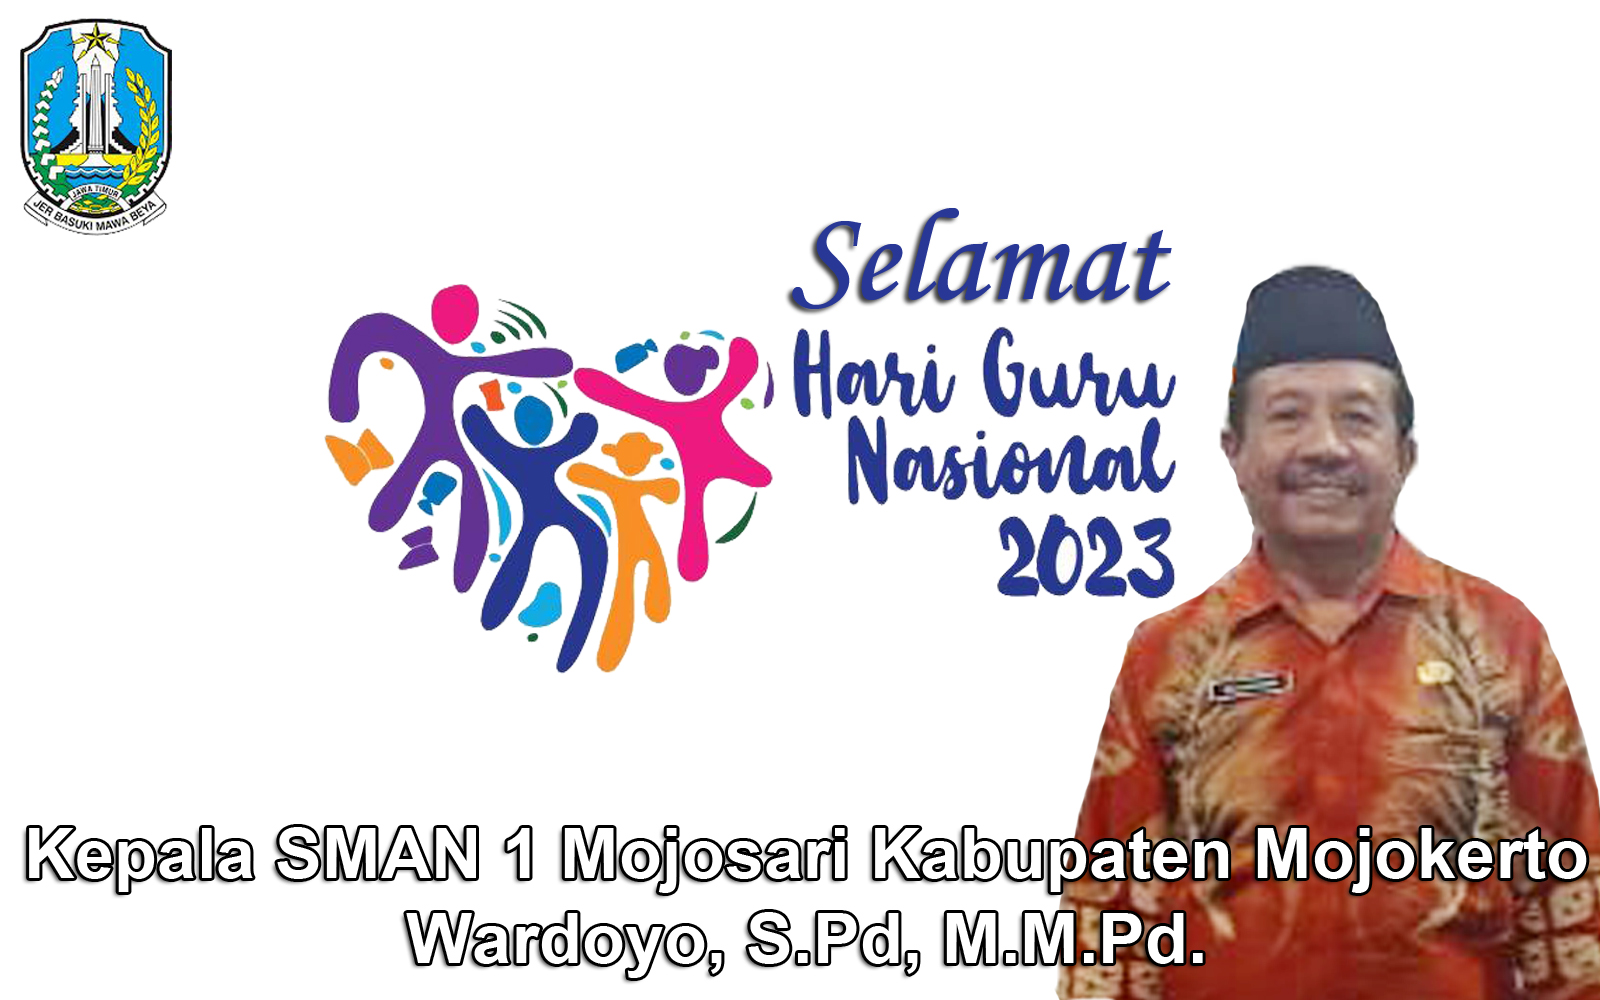 Kepala SMAN 1 Mojosari Kabupaten Mojokerto Mengucapkan Selamat Hari Guru Nasional 2023